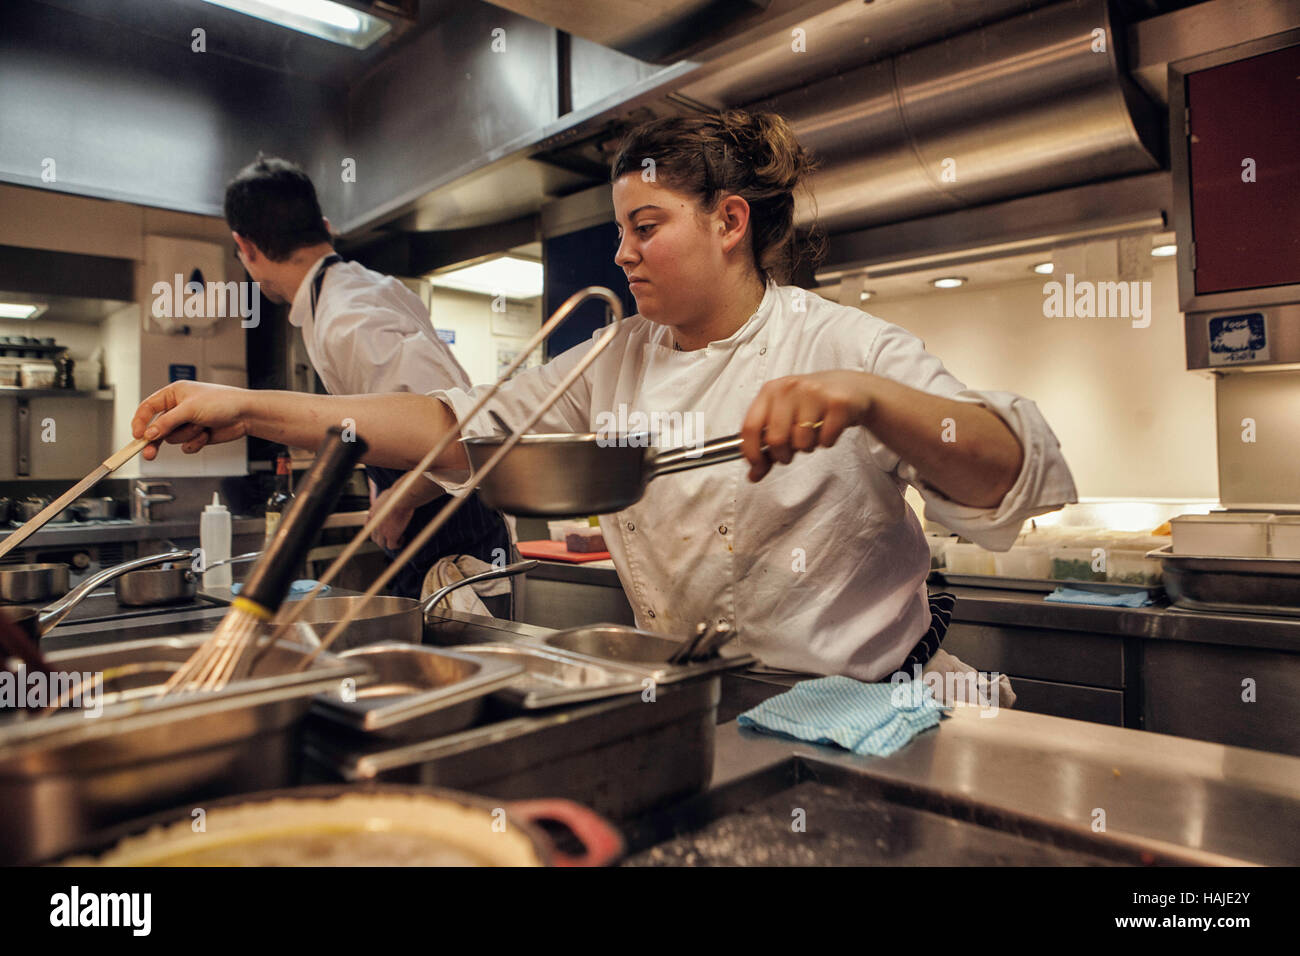 Alexia Dellaca-Minot, Chef de Partie, cocineros, un plato para servicio de almuerzo en el restaurante. La cocina de Gauthier Soho en el centro de Londres. Fotografías de Foto de stock